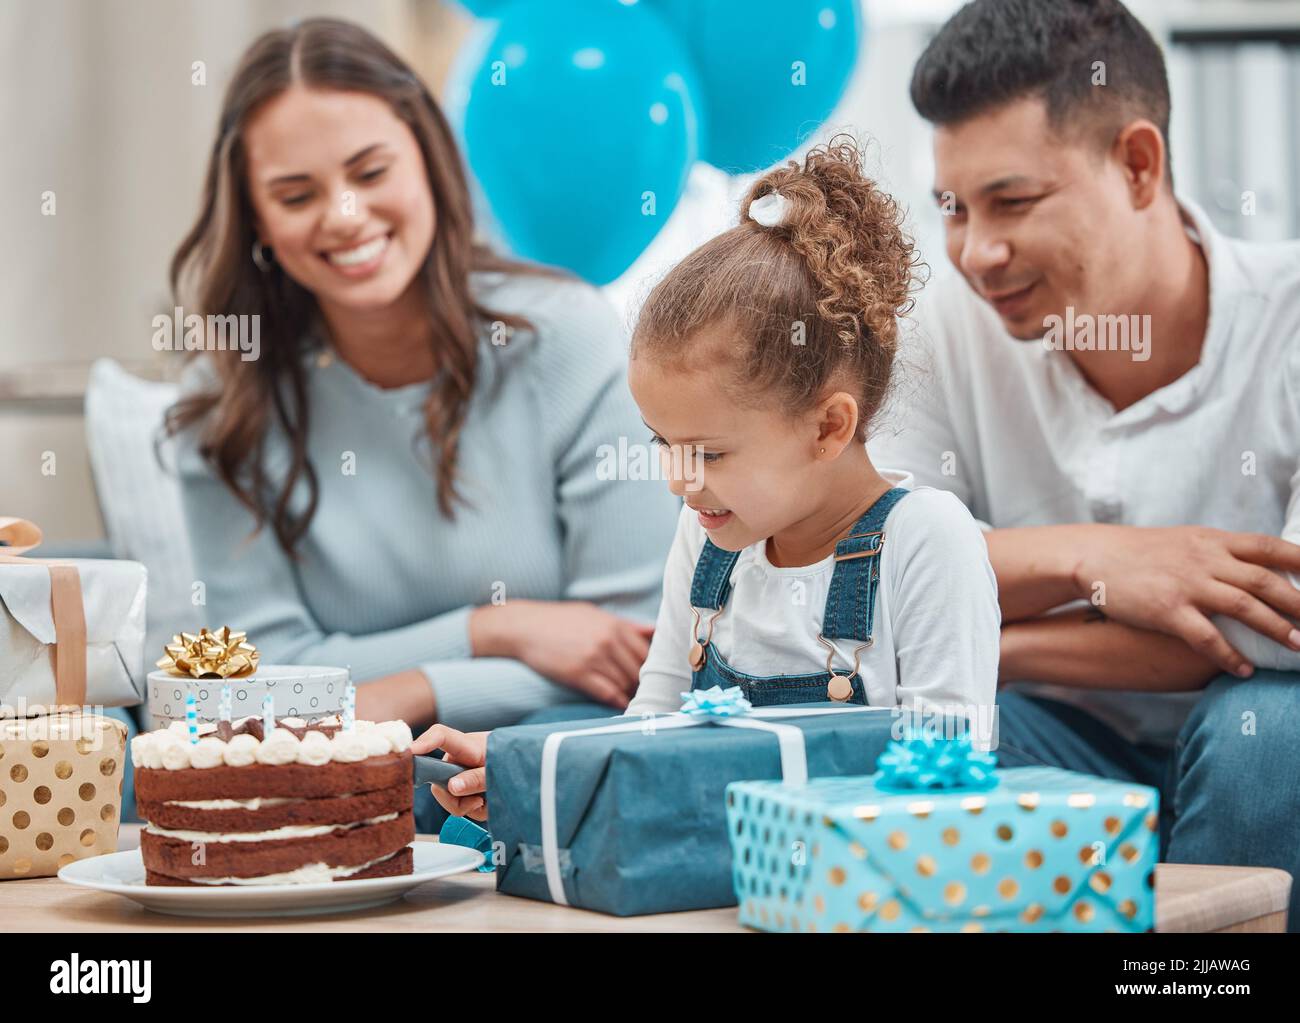 Ayez votre gâteau et partagez-le aussi. Une famille heureuse célébrant un anniversaire à la maison. Banque D'Images